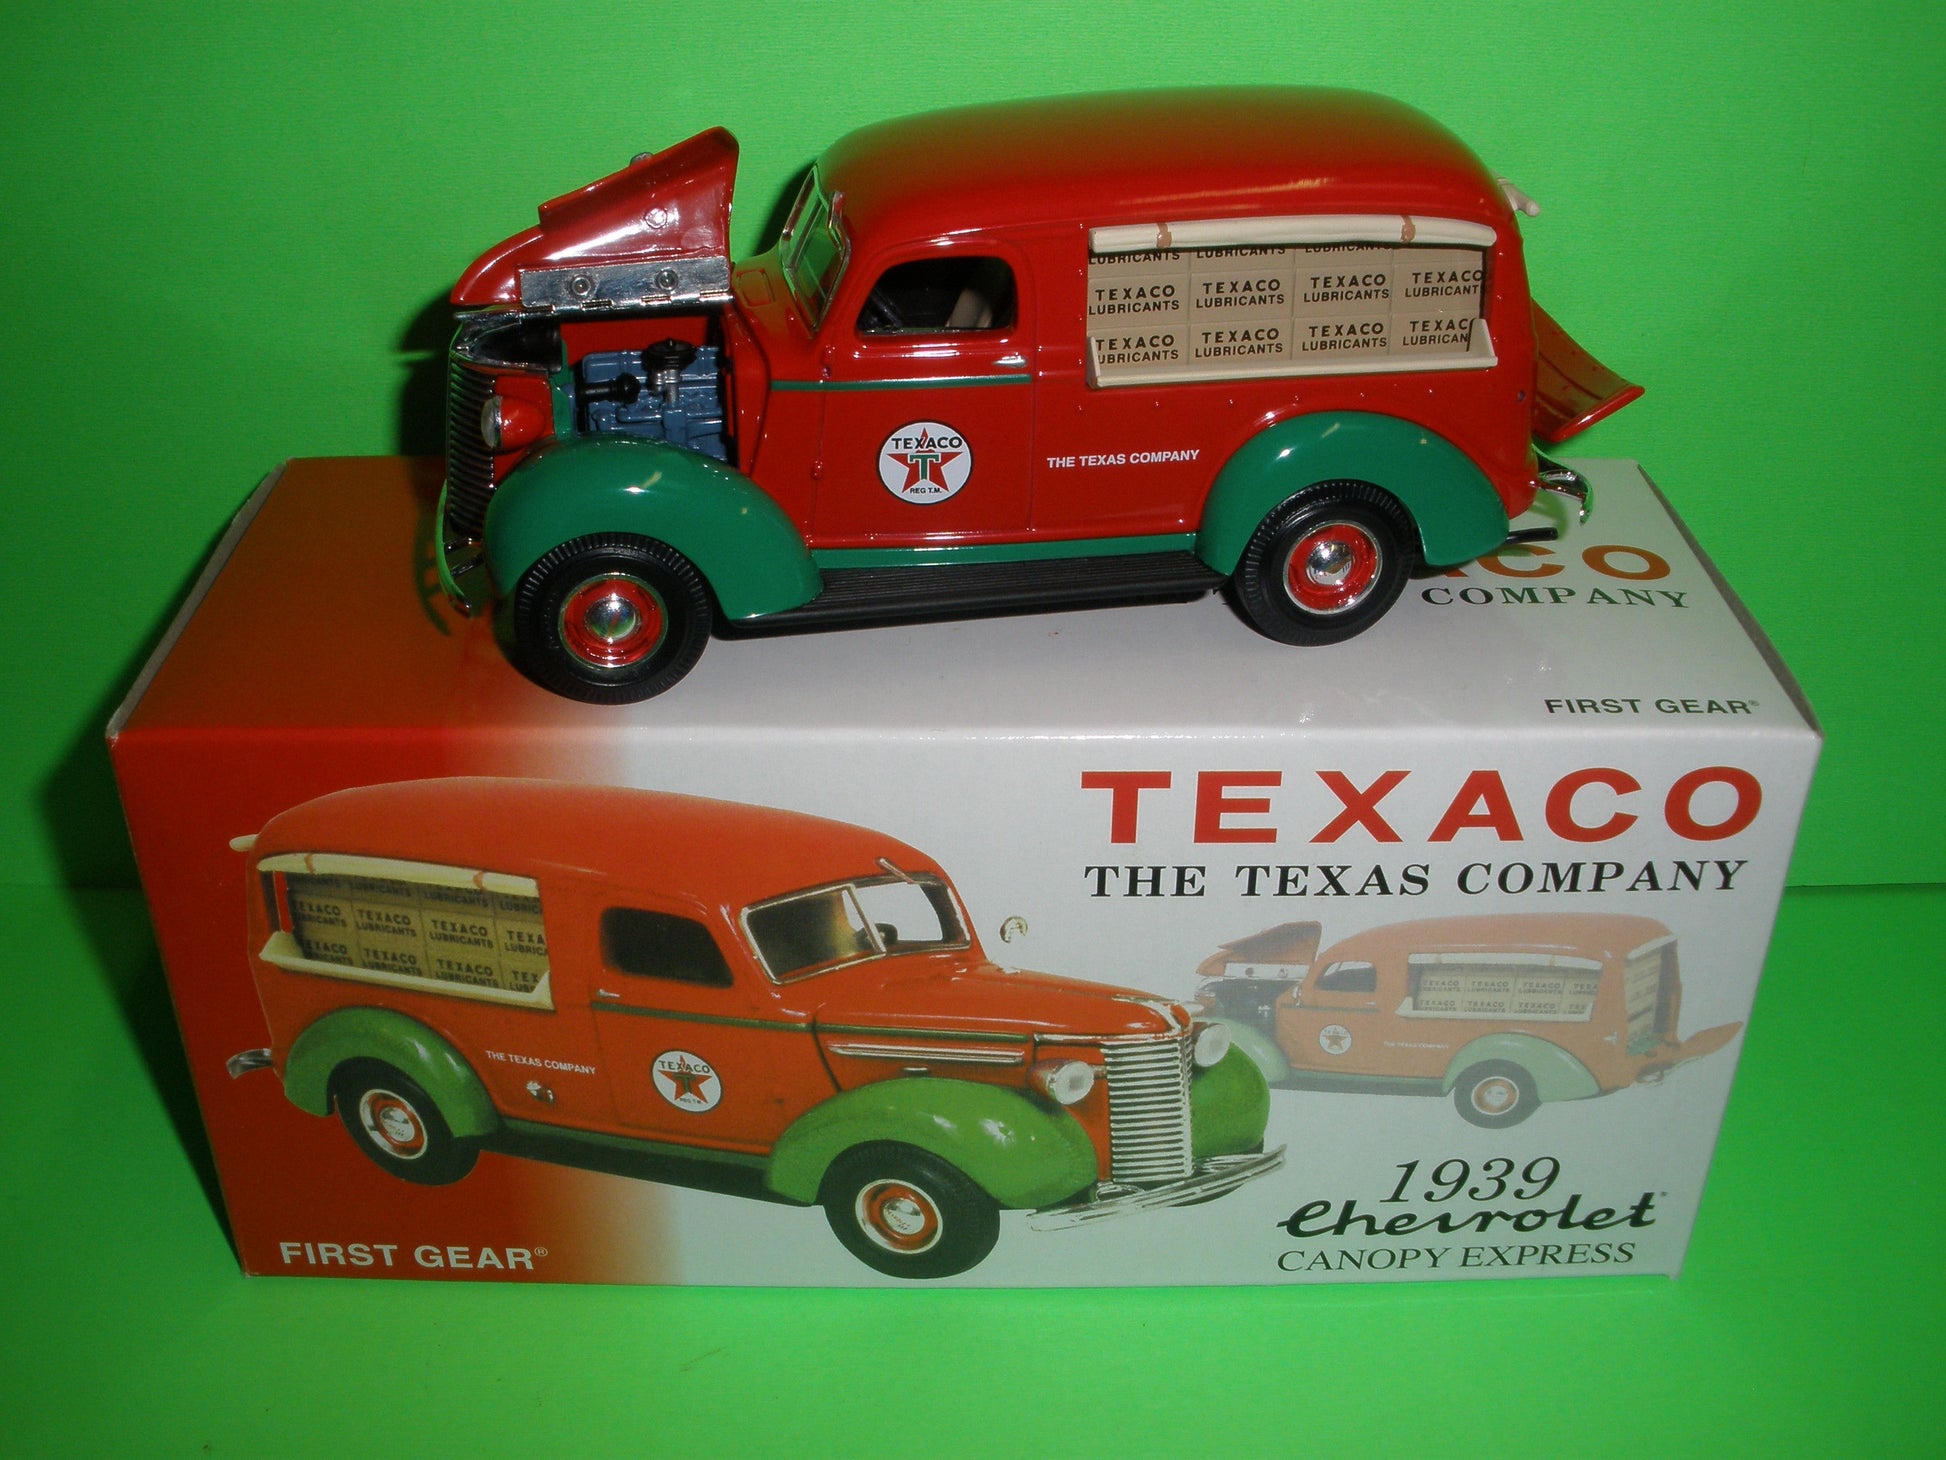 Texaco 1939 Chevrolet Canopy Express